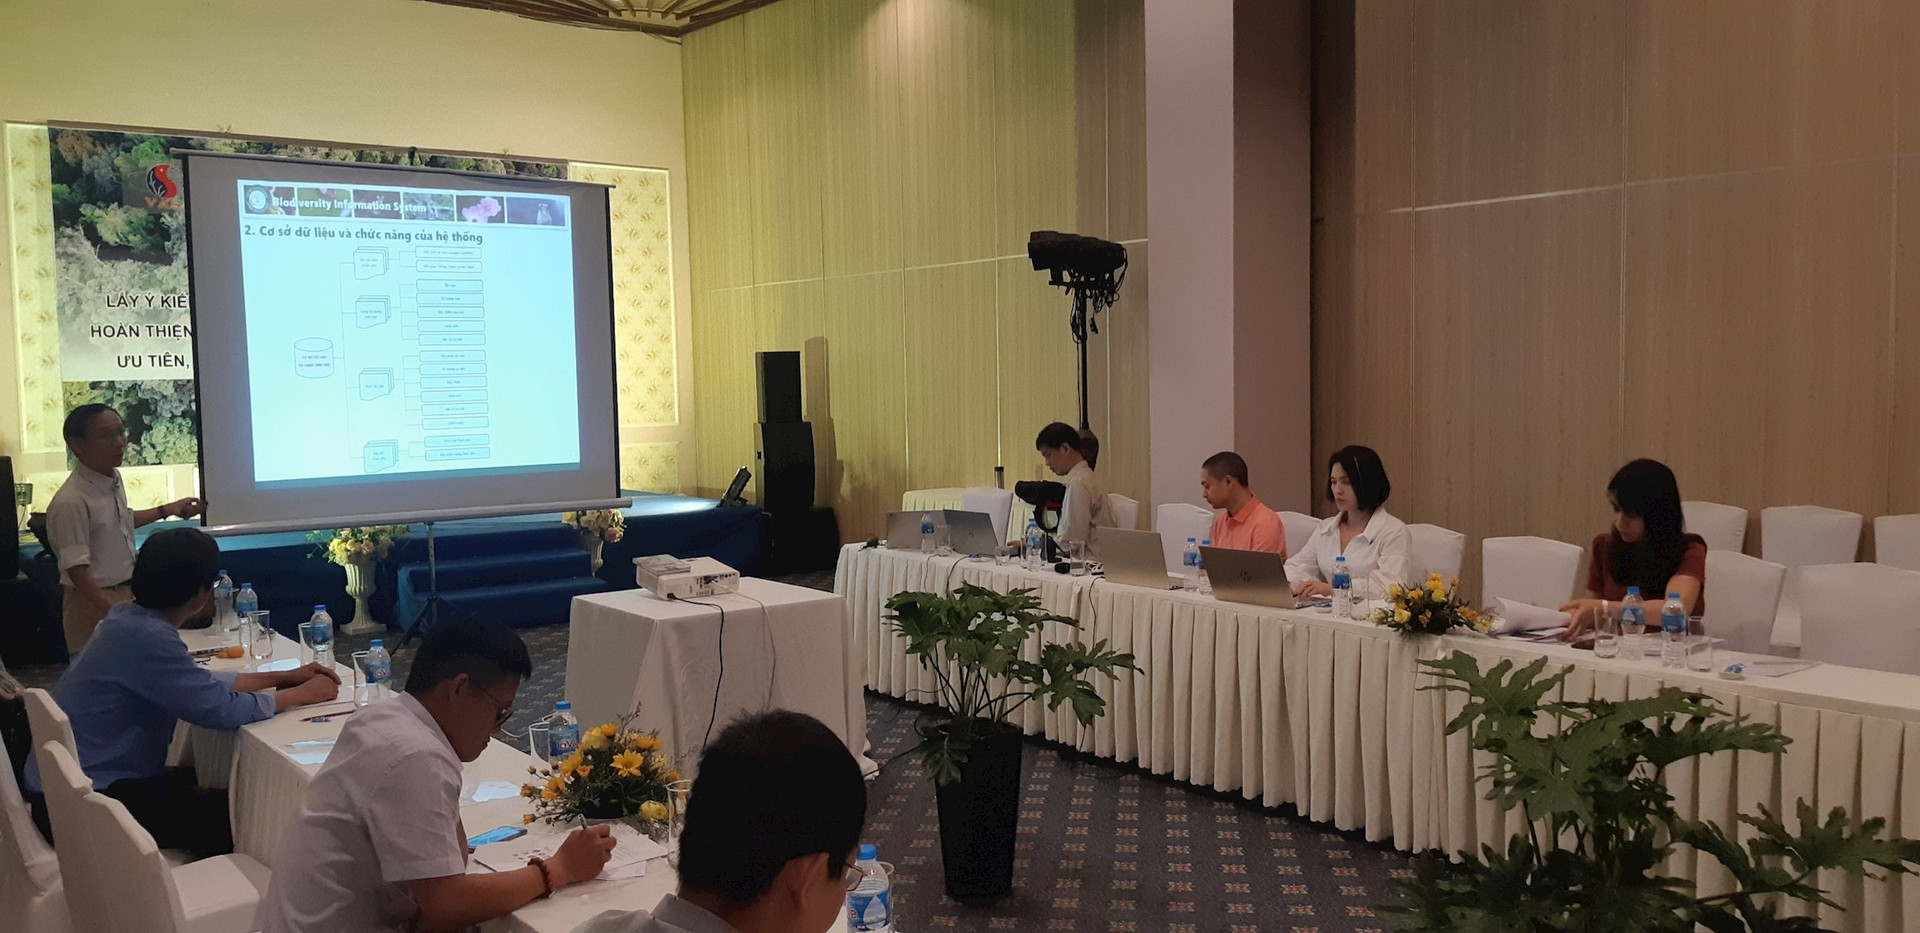 Phú Yên:  Hội thảo quy hoạch bảo tồn các khu vực ưu tiên, mở rộng các khu rừng đặc dụng hiện tại 